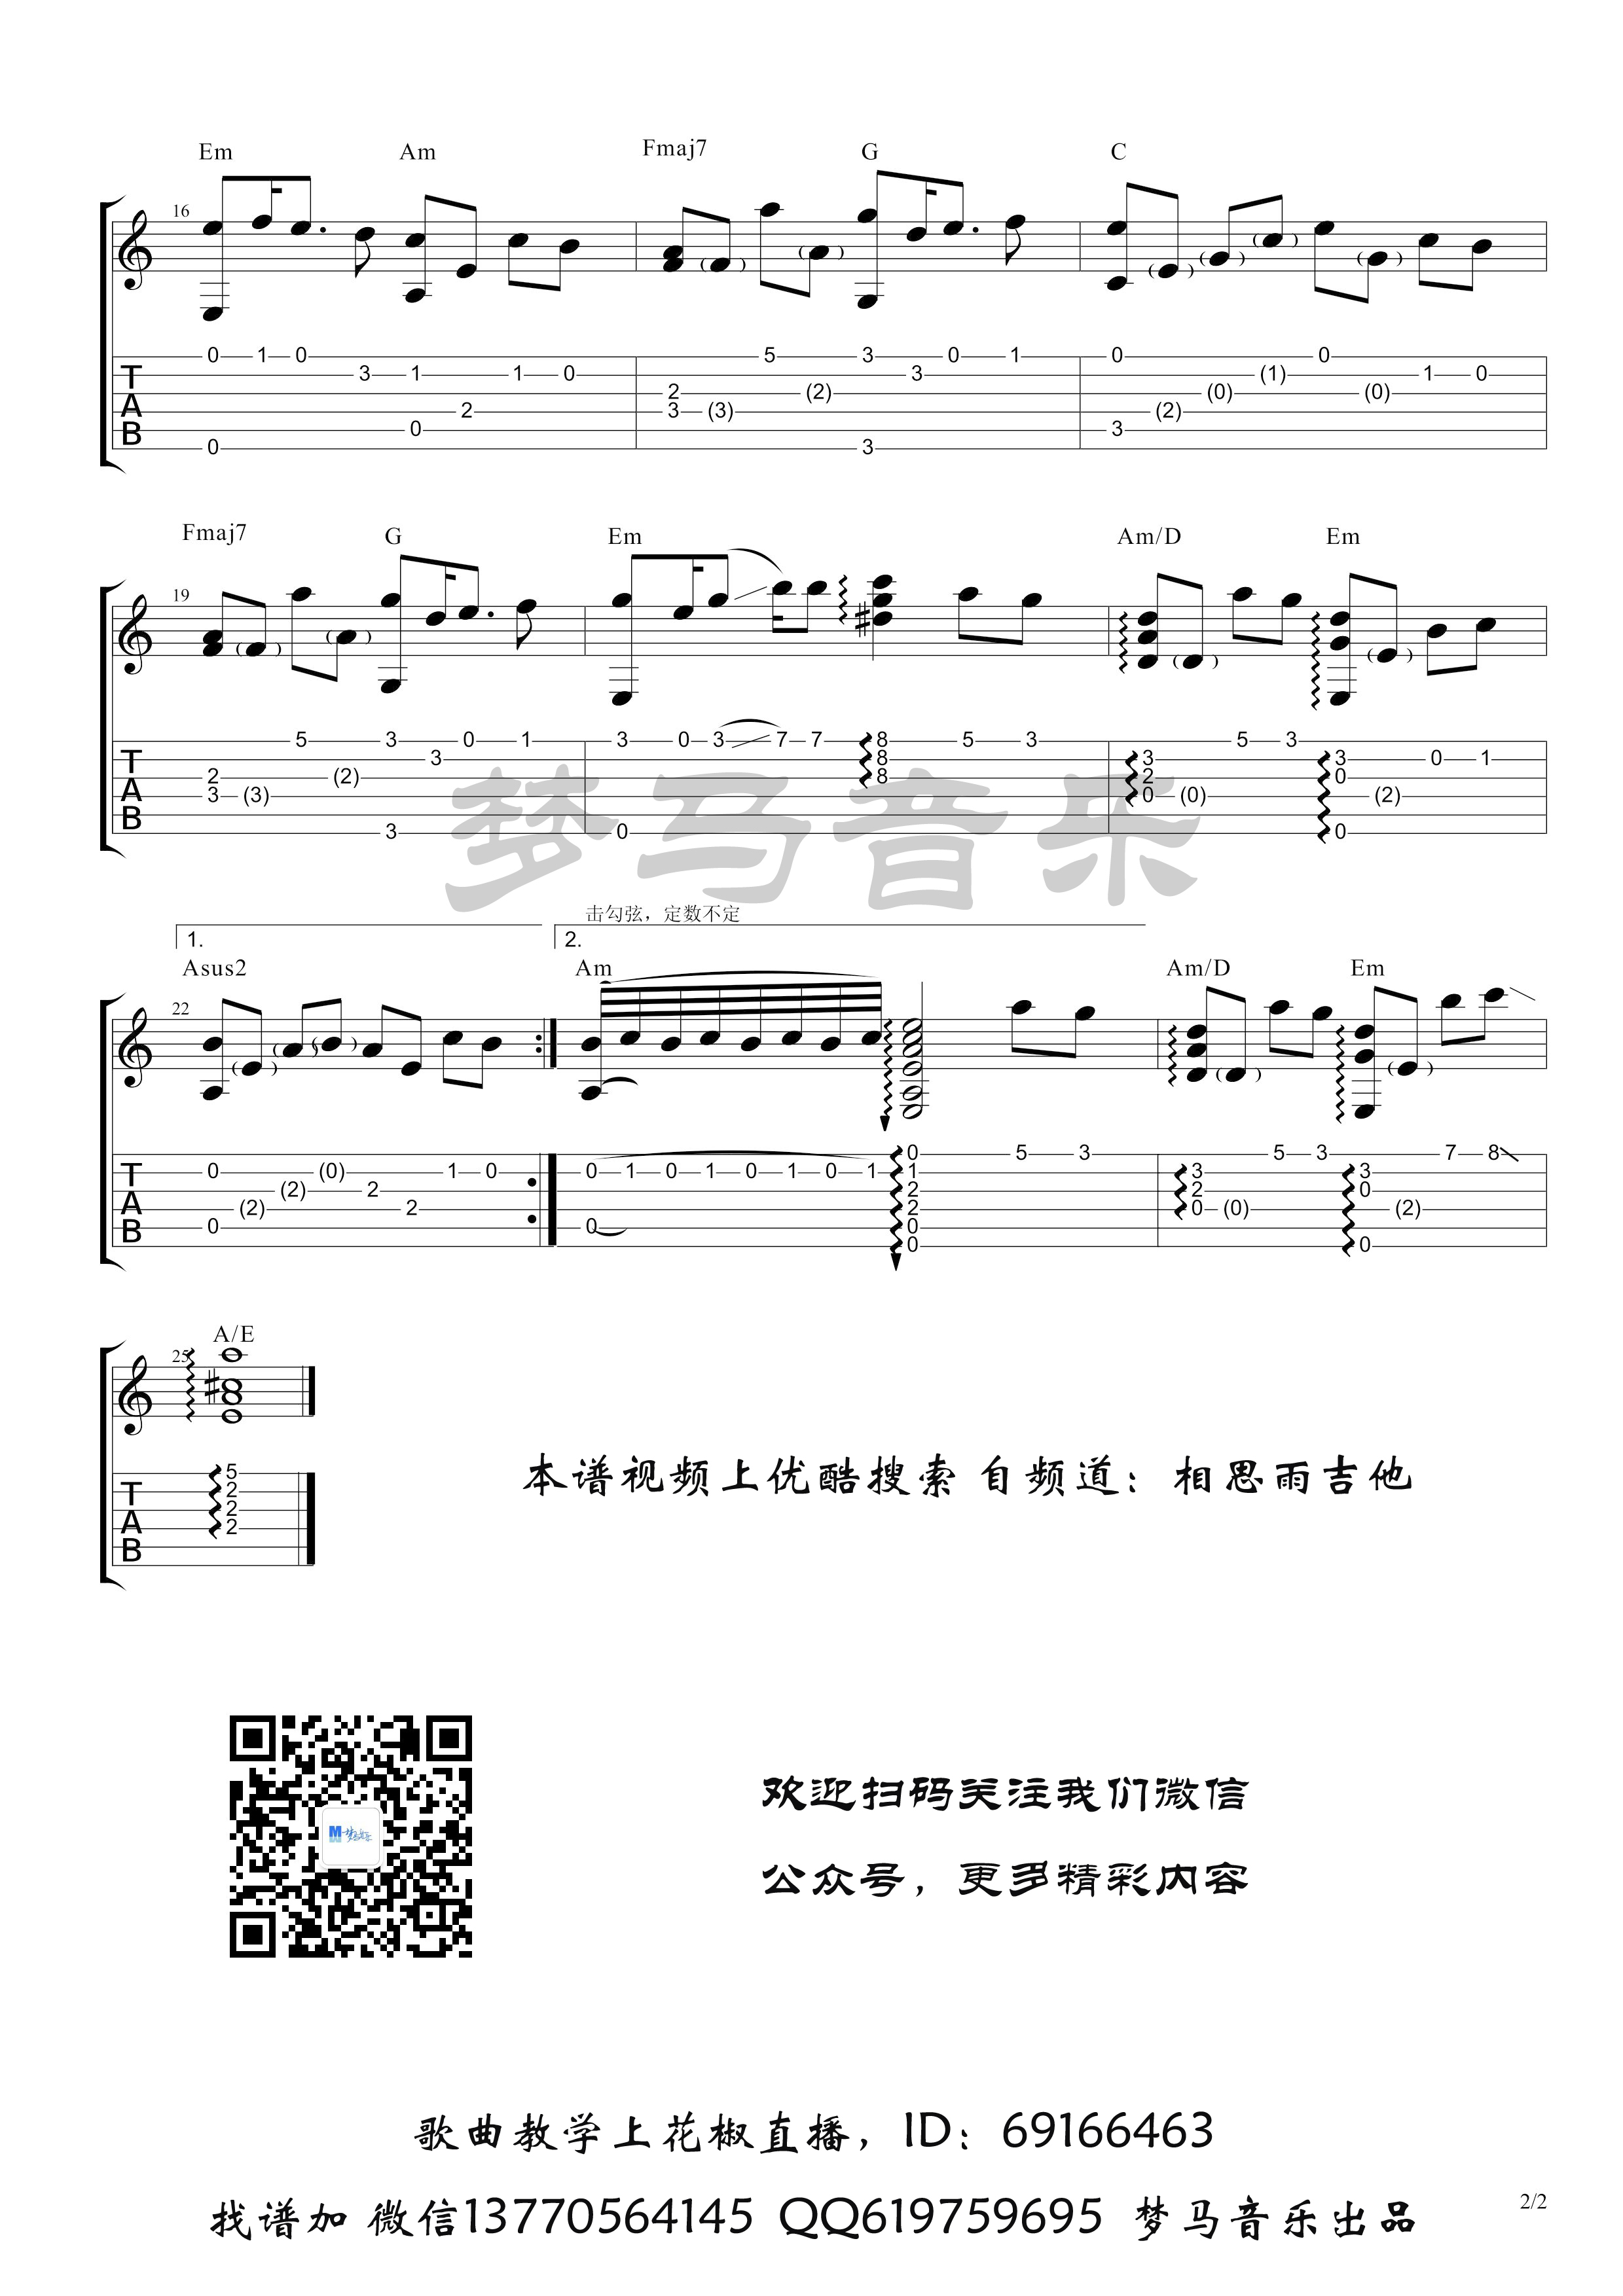 九张机吉他谱(图片谱,指弹,简单版)_叶炫清_九张机-2.jpg